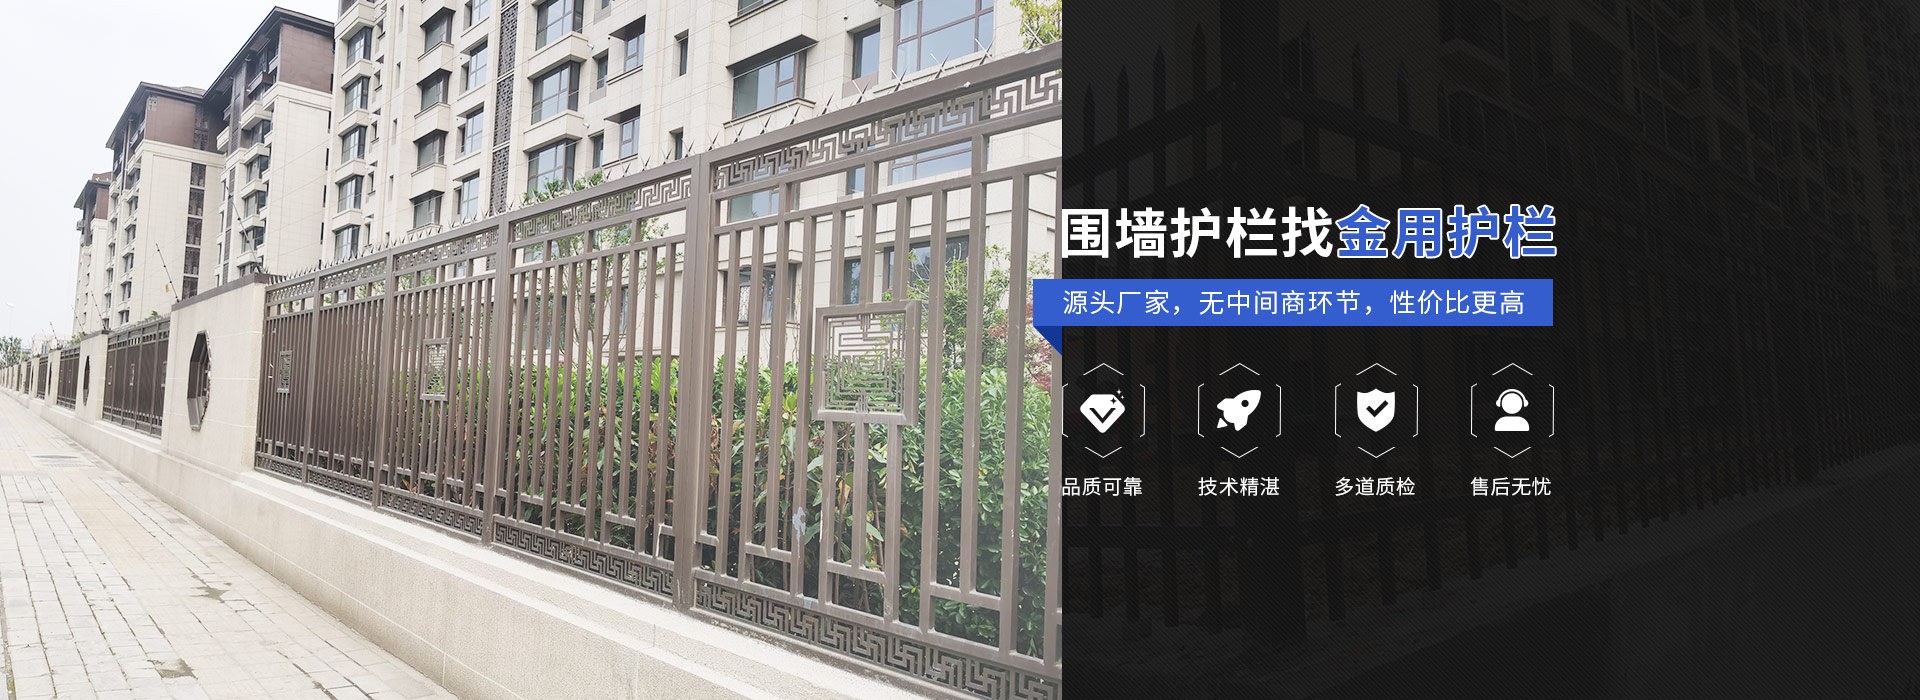 安徽j9游会真人游戏第一品牌护栏厂家官方网站